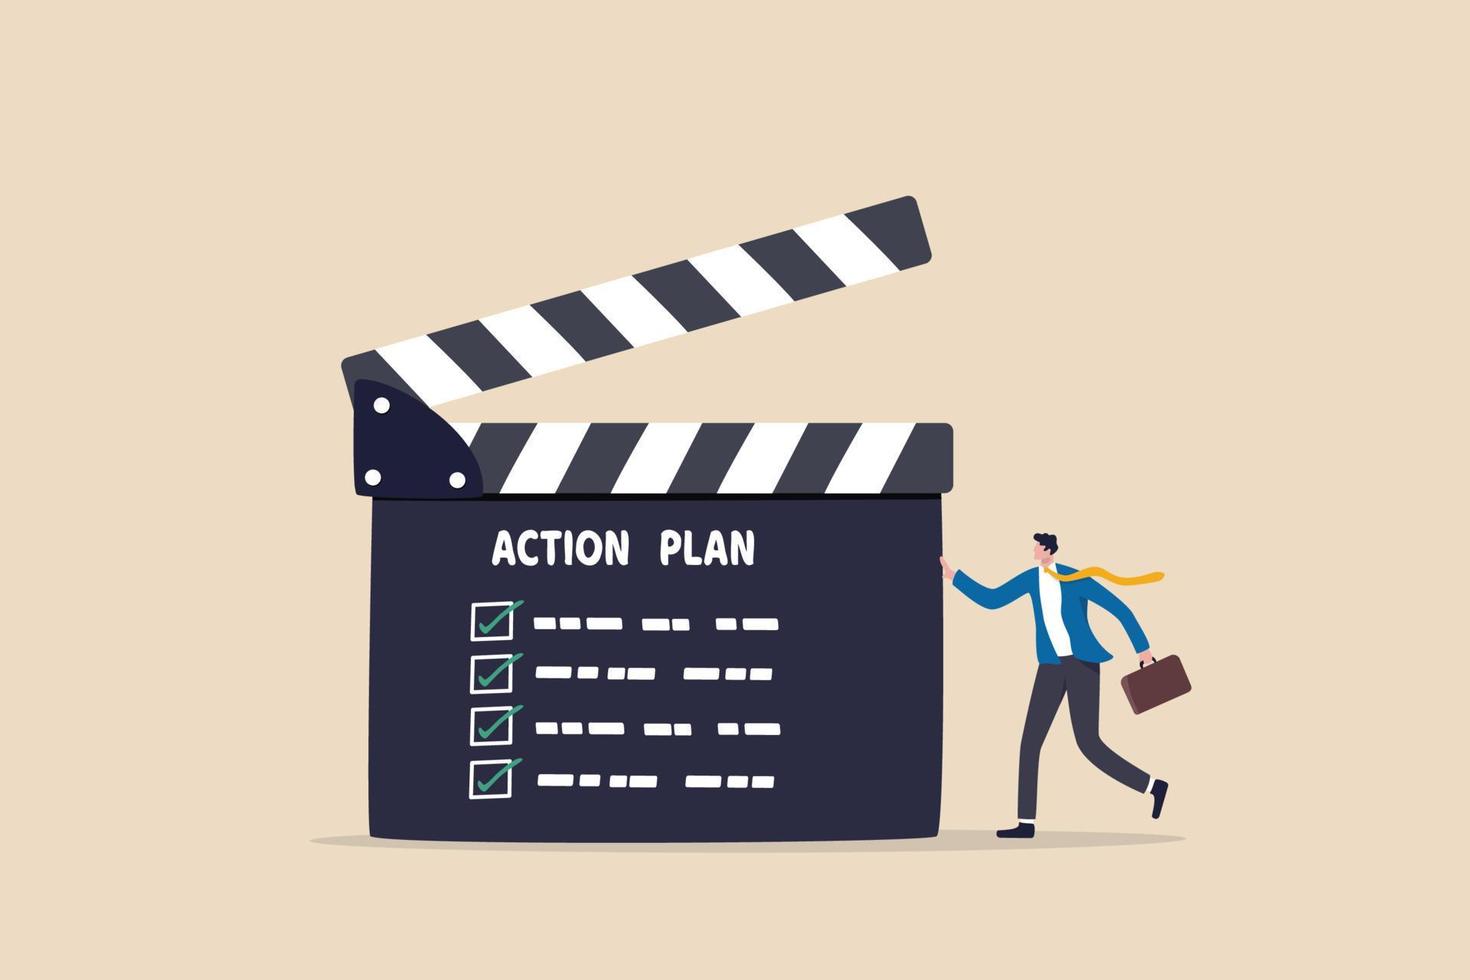 actieplan met checklist stap voor stap van bedrijfsimplementatie, procedure of strategieplan om projectconcept af te ronden, zakenmanmanager met regisseurspaan of leisteen met actieplanstappen vector